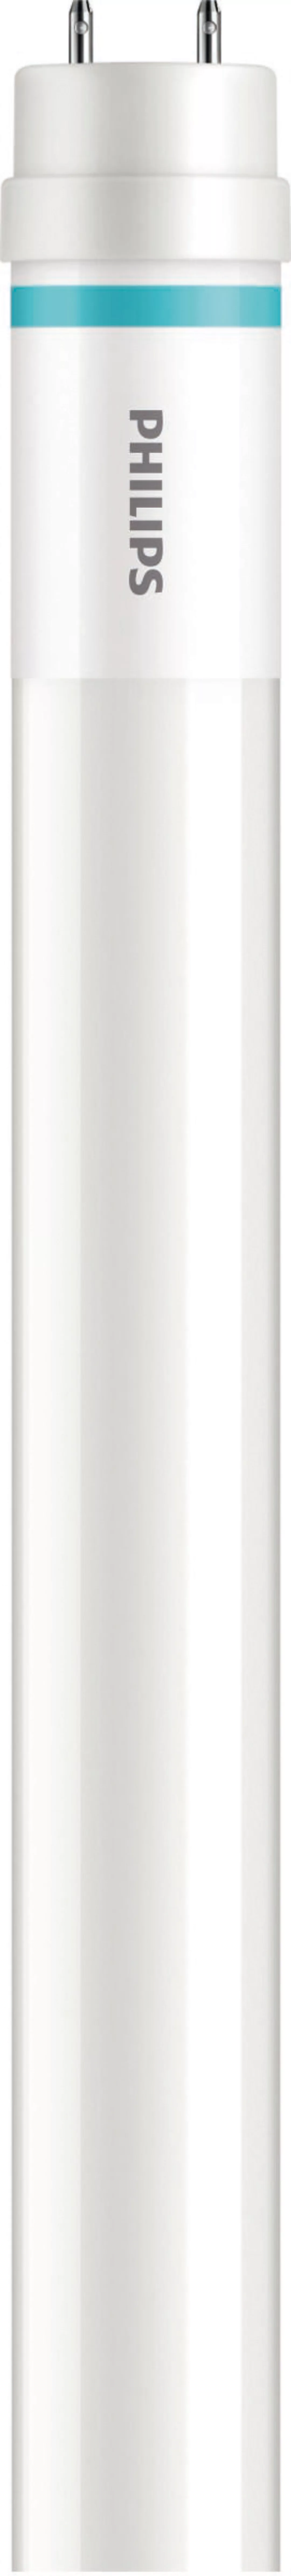 Philips Lighting LED-Tube T8 f. KVG/VVG G13, 840, 1200mm MASLEDtube #316829 günstig online kaufen